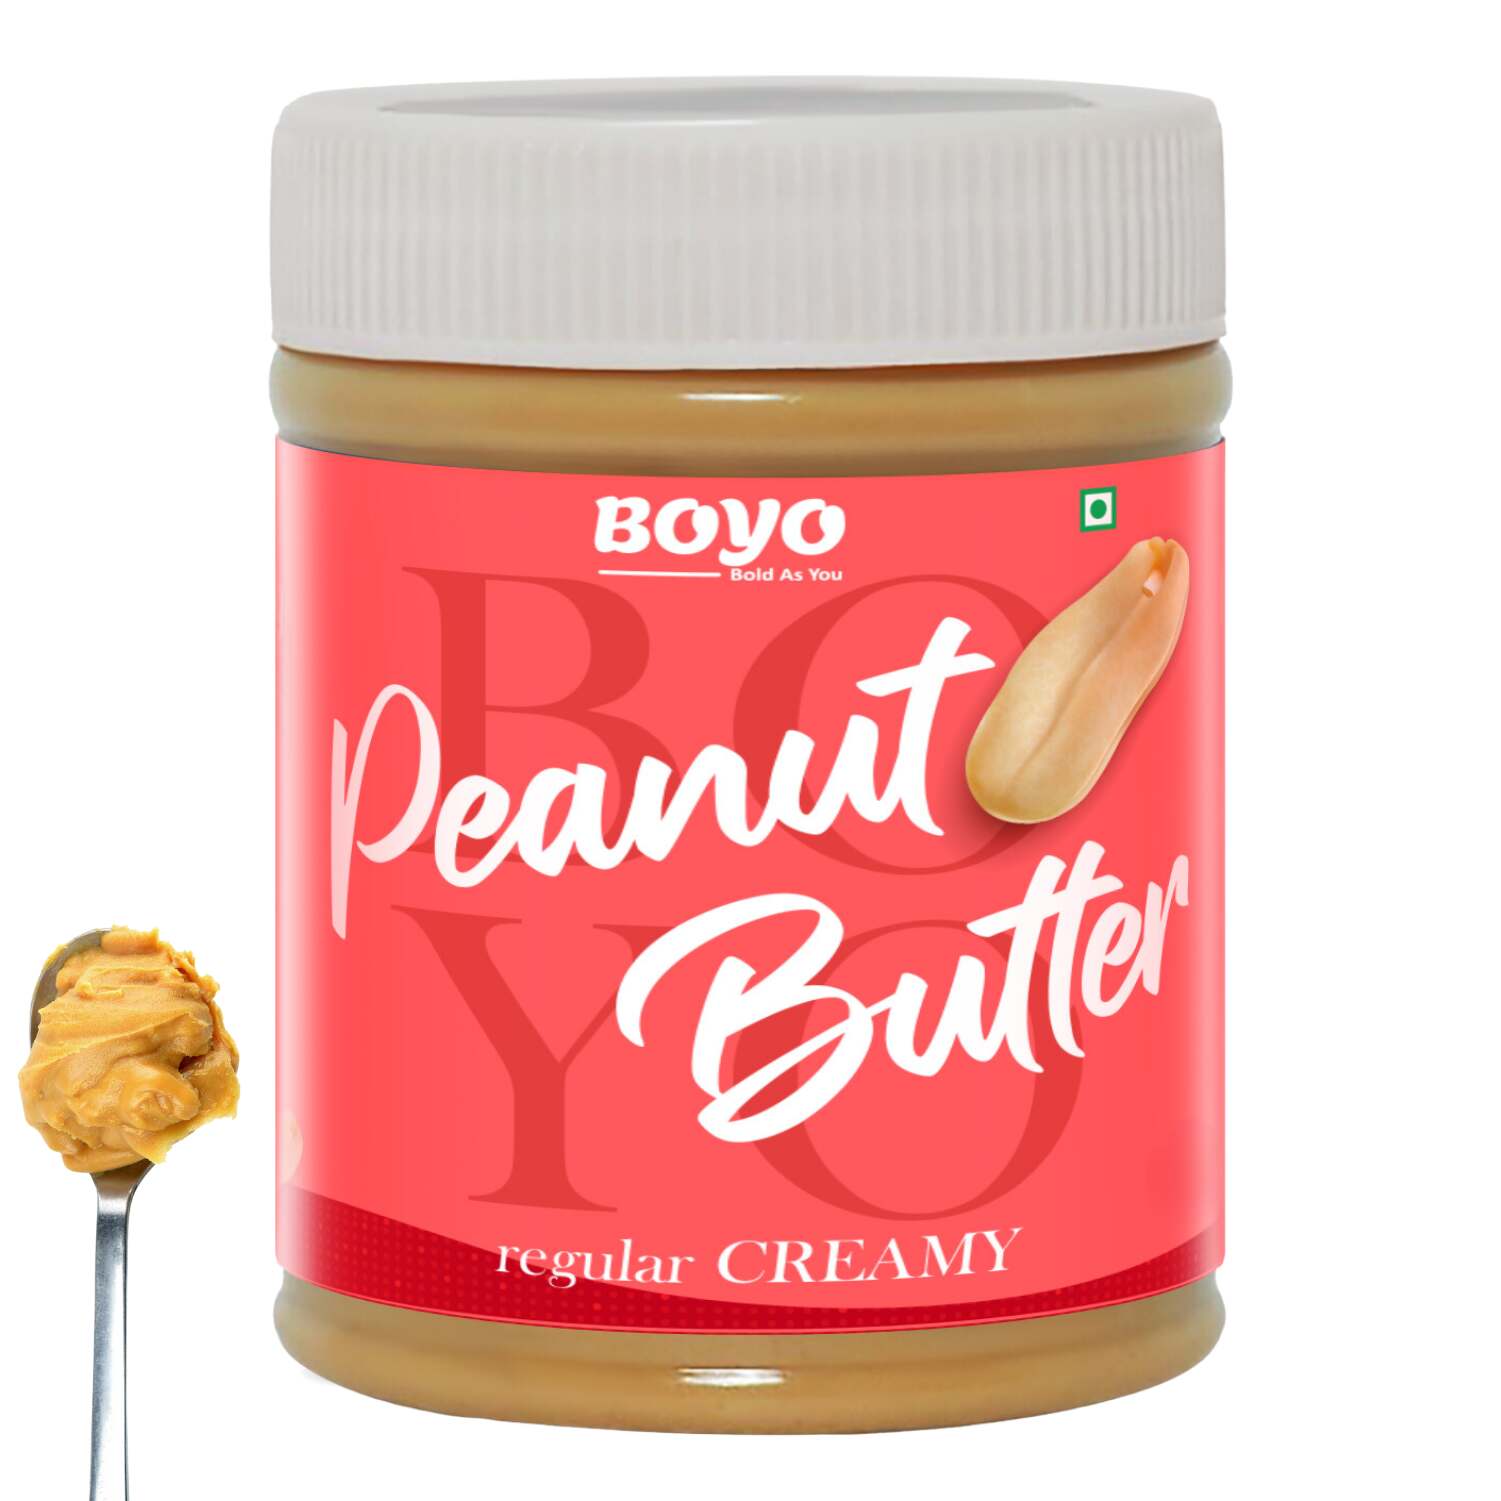 Peanut Butter Regular Creamy flavor - 240gm